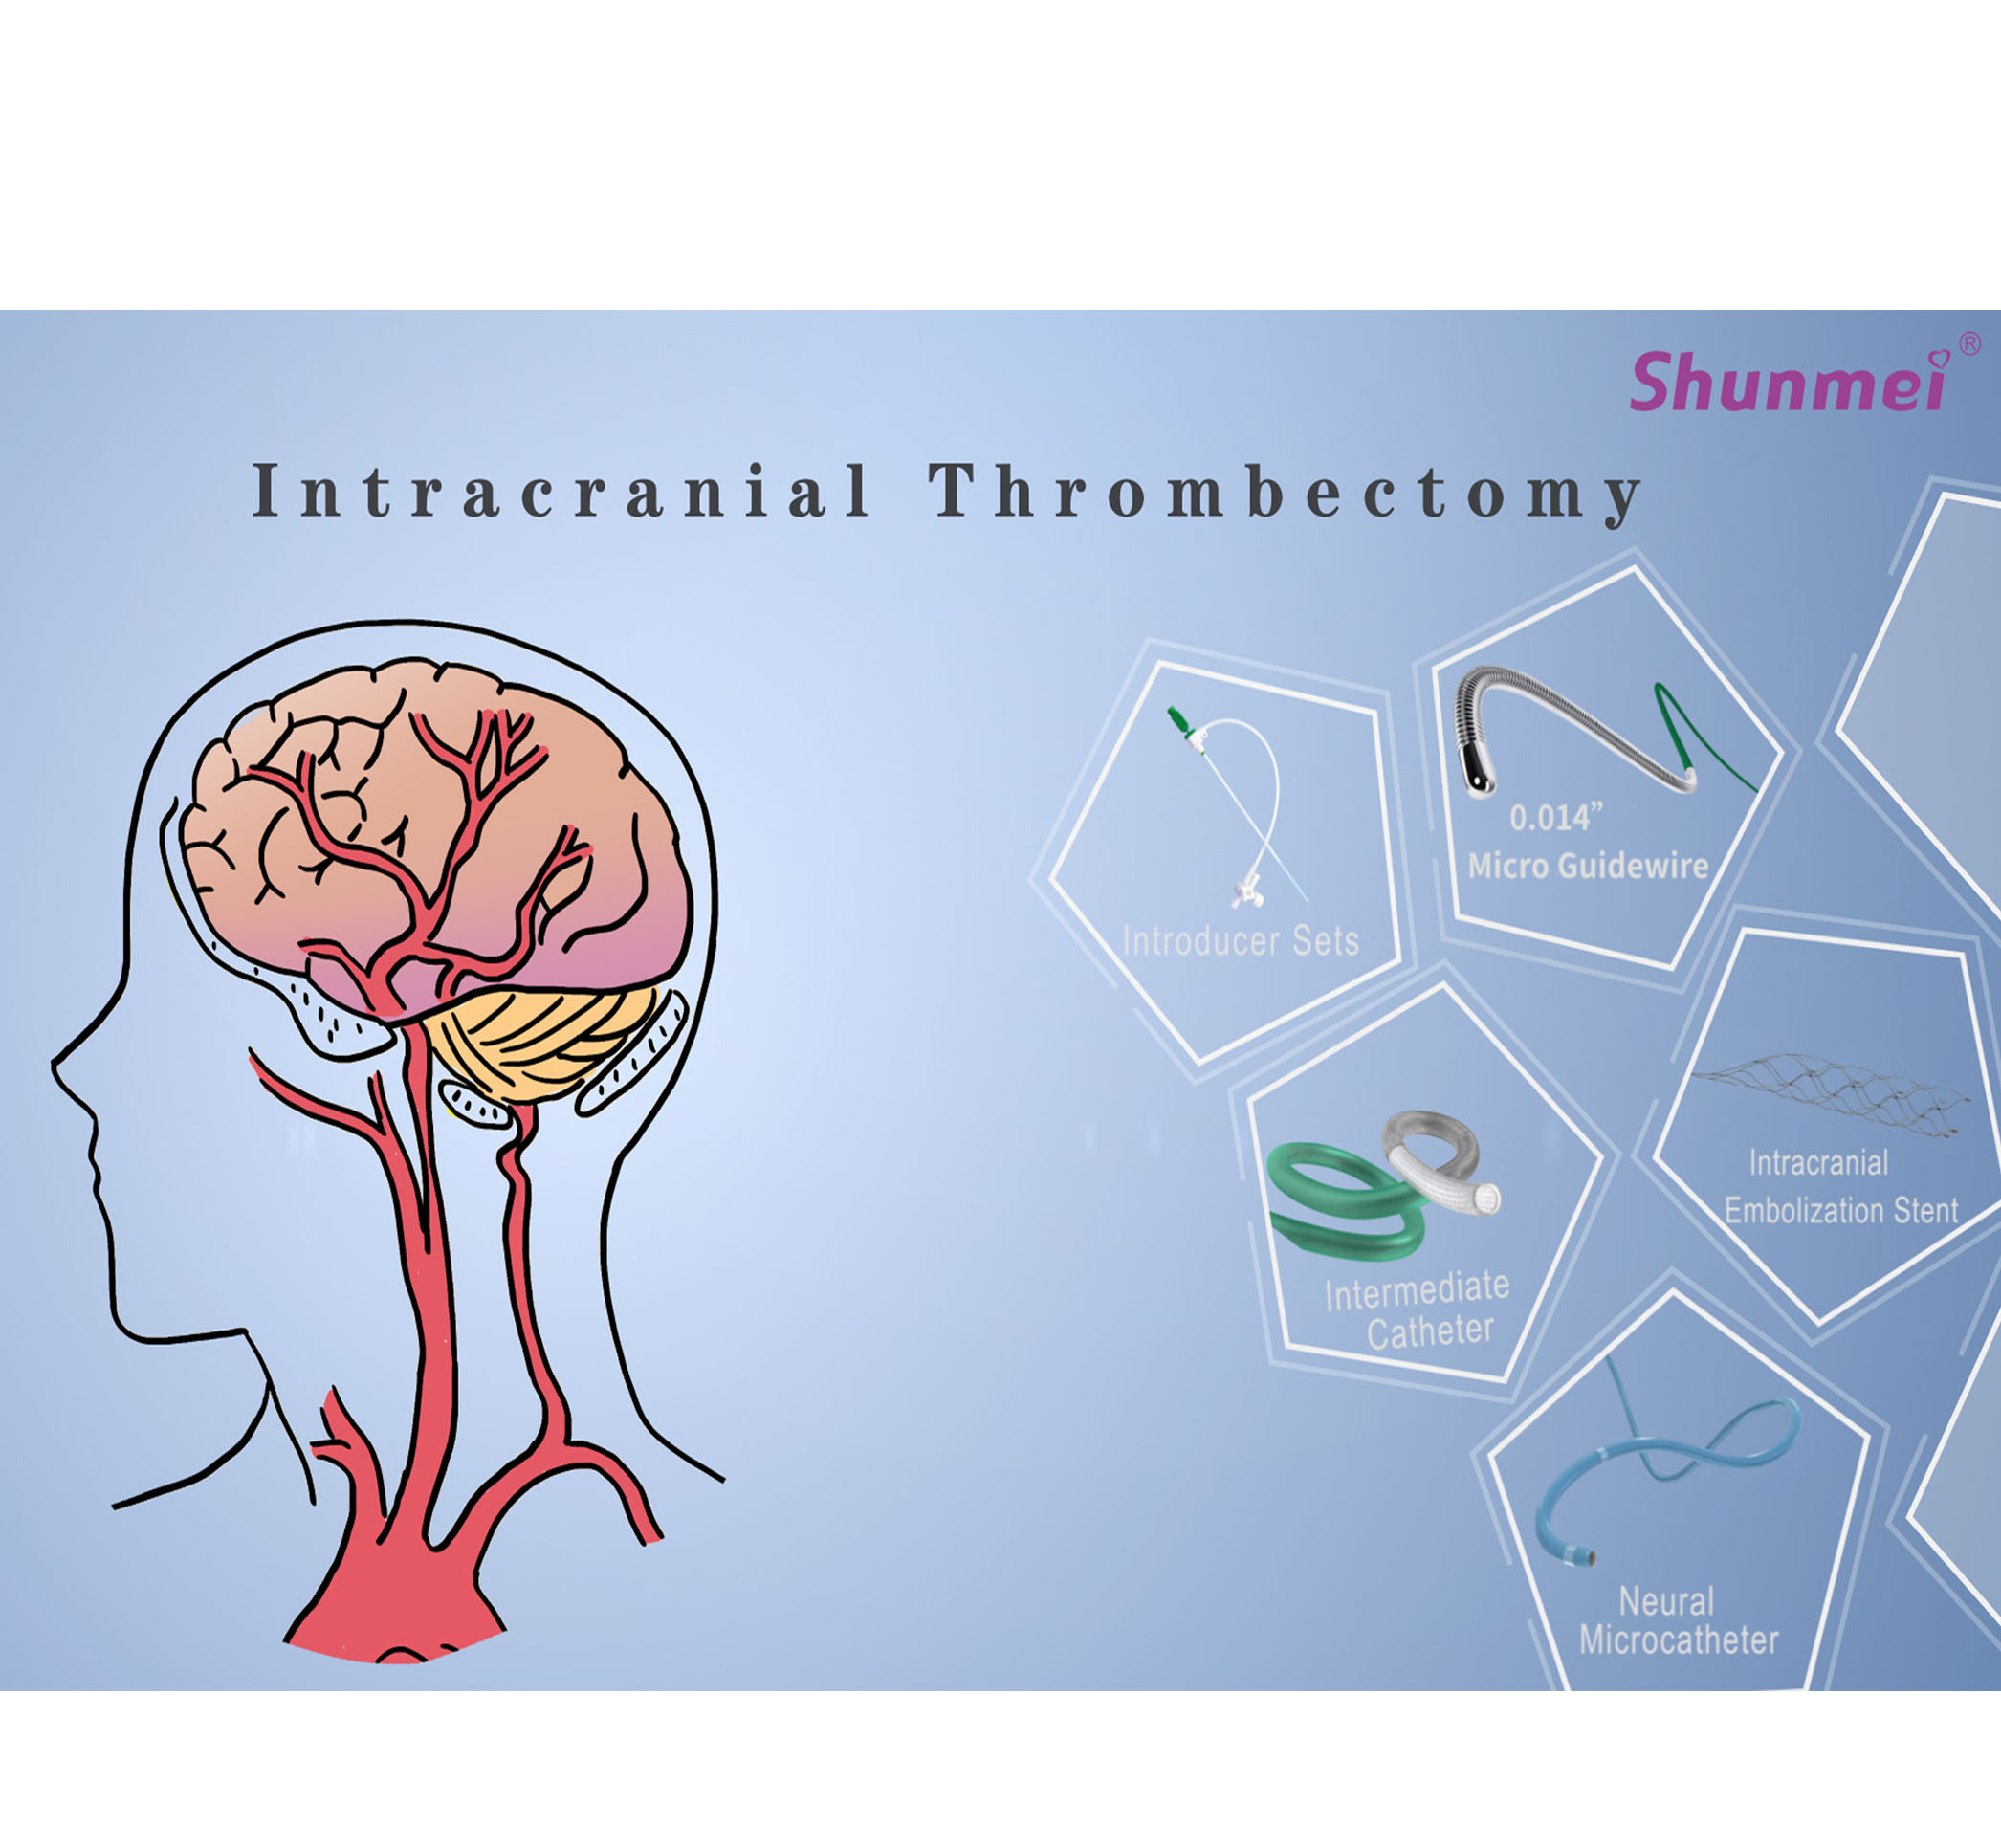 Intracranial Thrombectomy